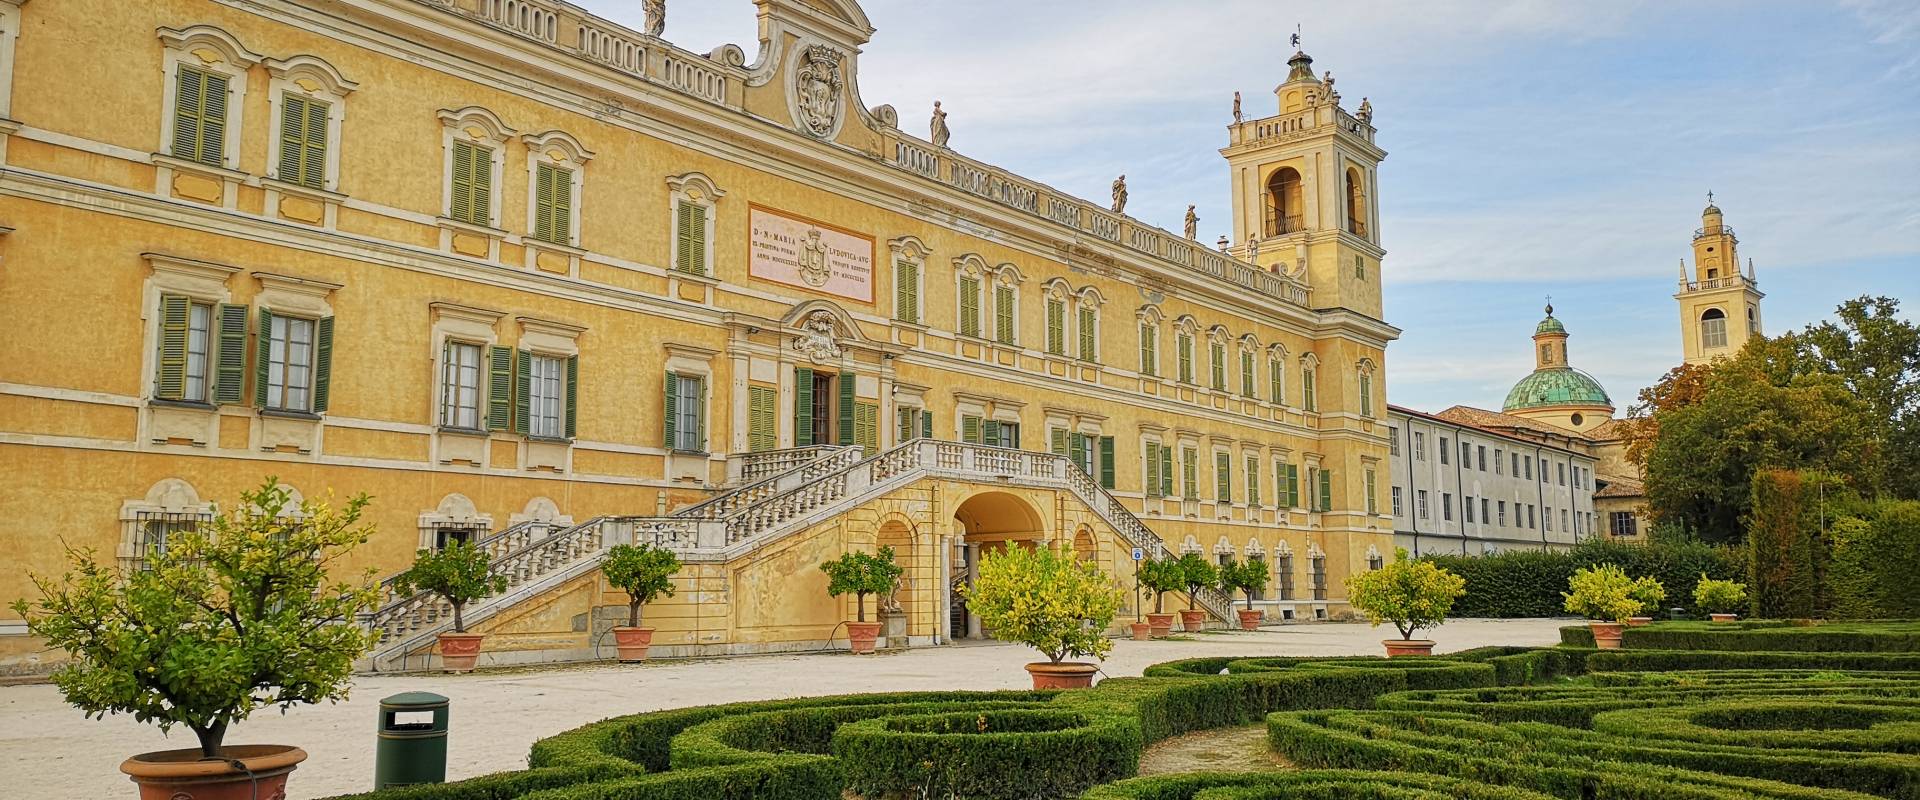 Palazzo Ducale a Colorno, facciata verso i giardini, 21-9-2019 foto di Fabrizio Marcheselli